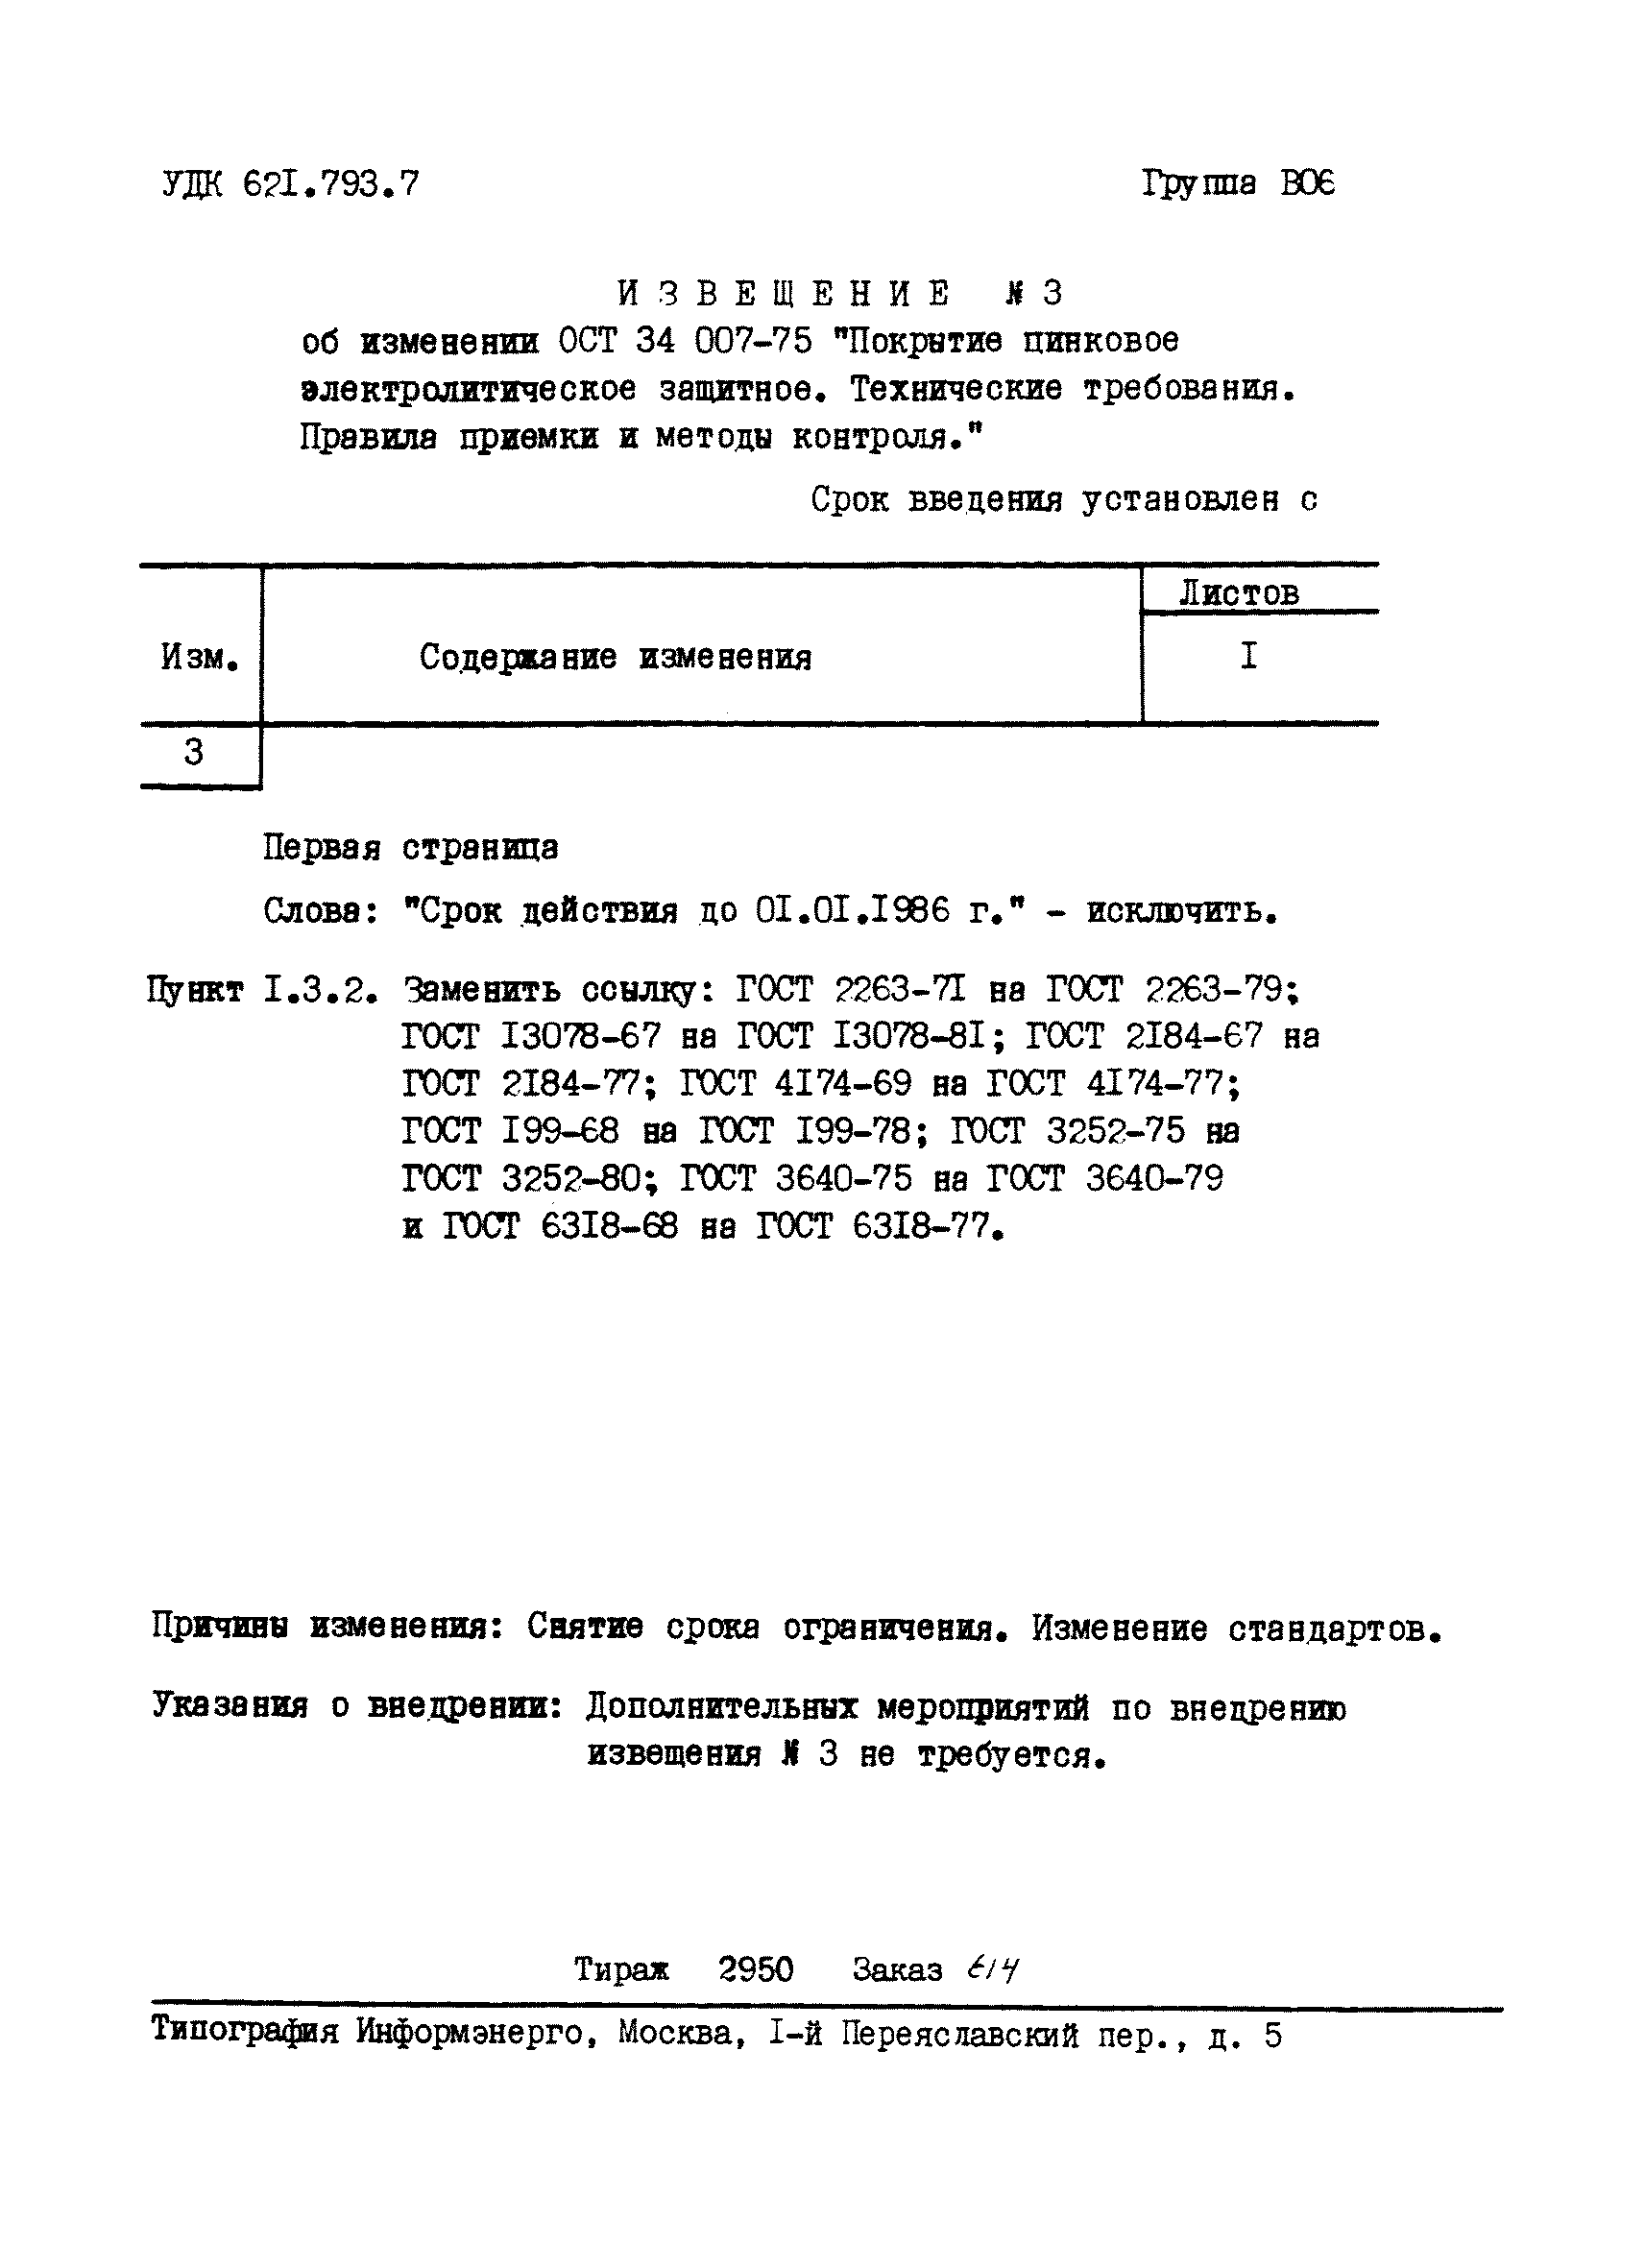 ОСТ 34 007-75